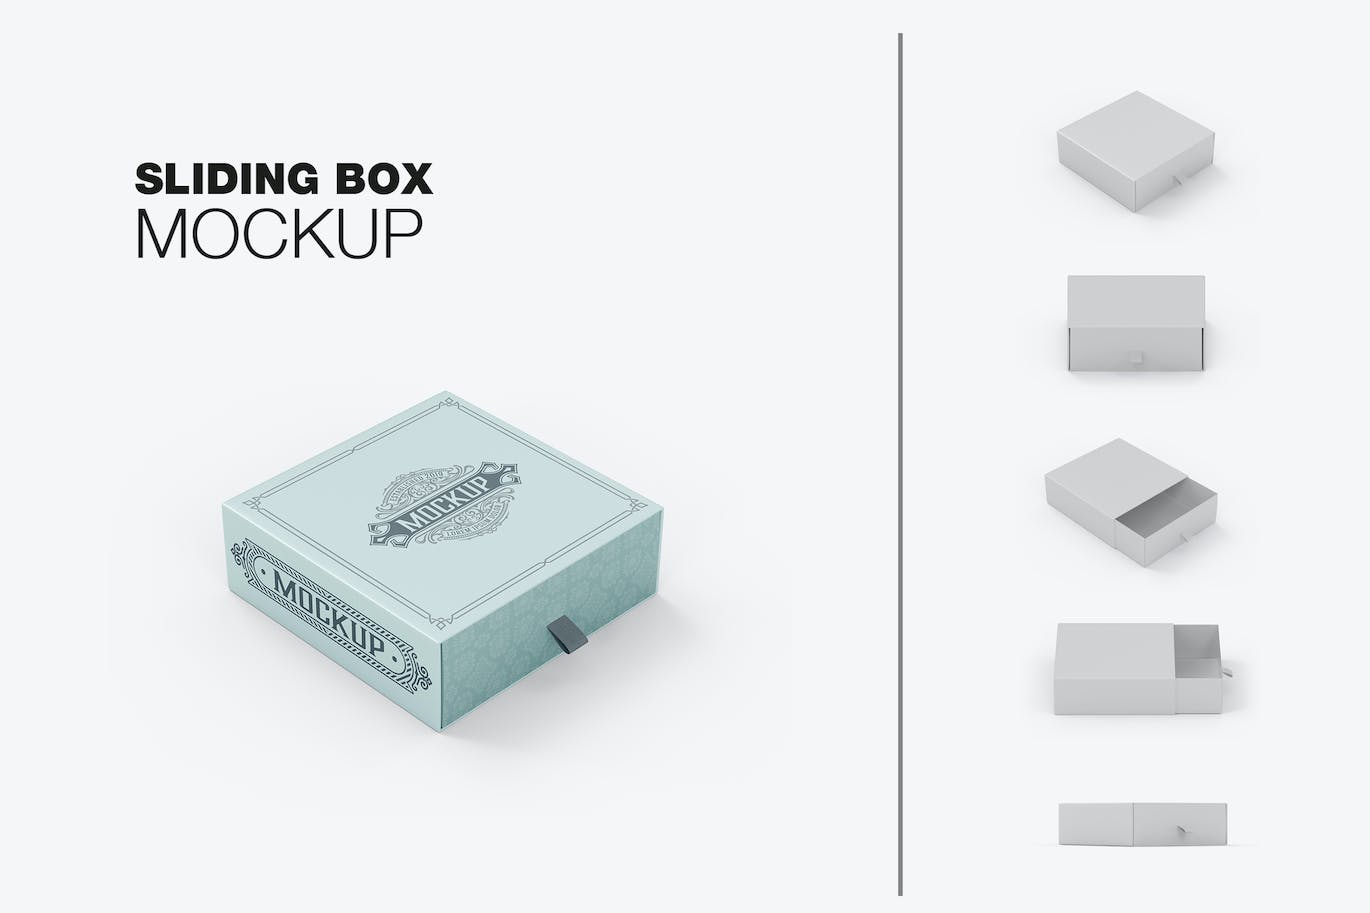 拖式纸盒包装设计样机 SlideBox Mockup 样机素材 第1张